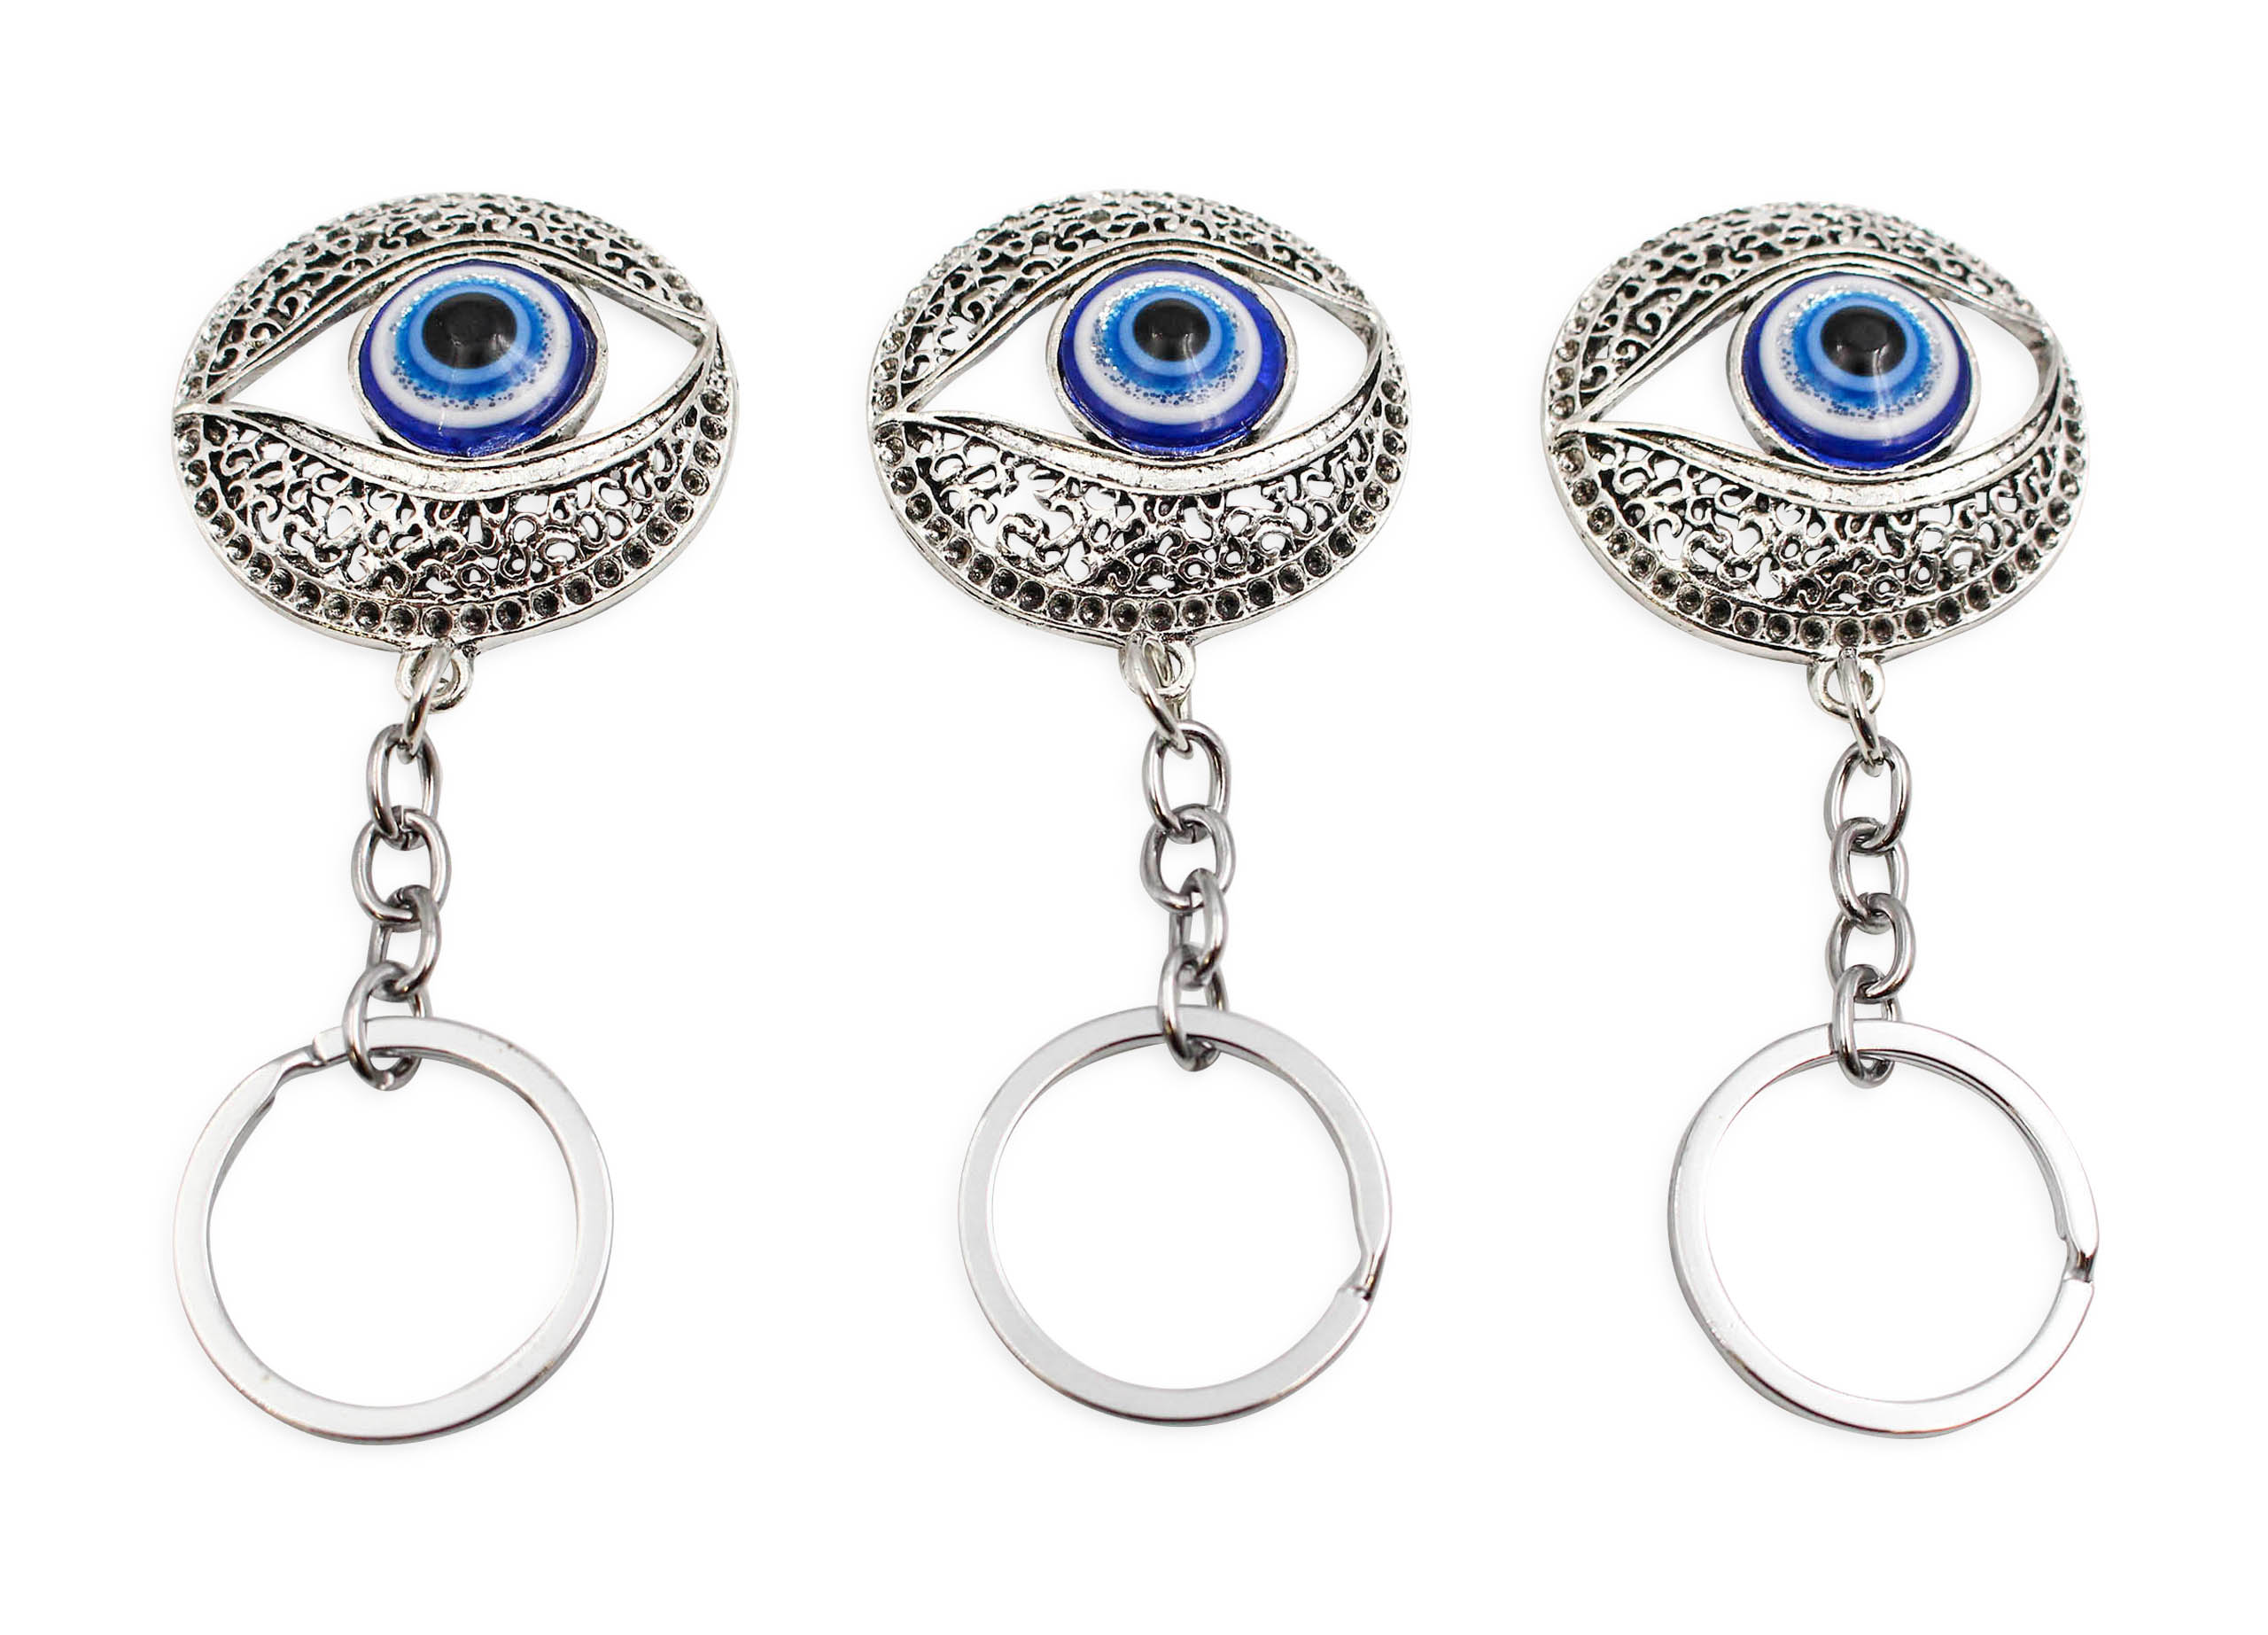 Evil Eye Round Keychain - Crystal Dreams